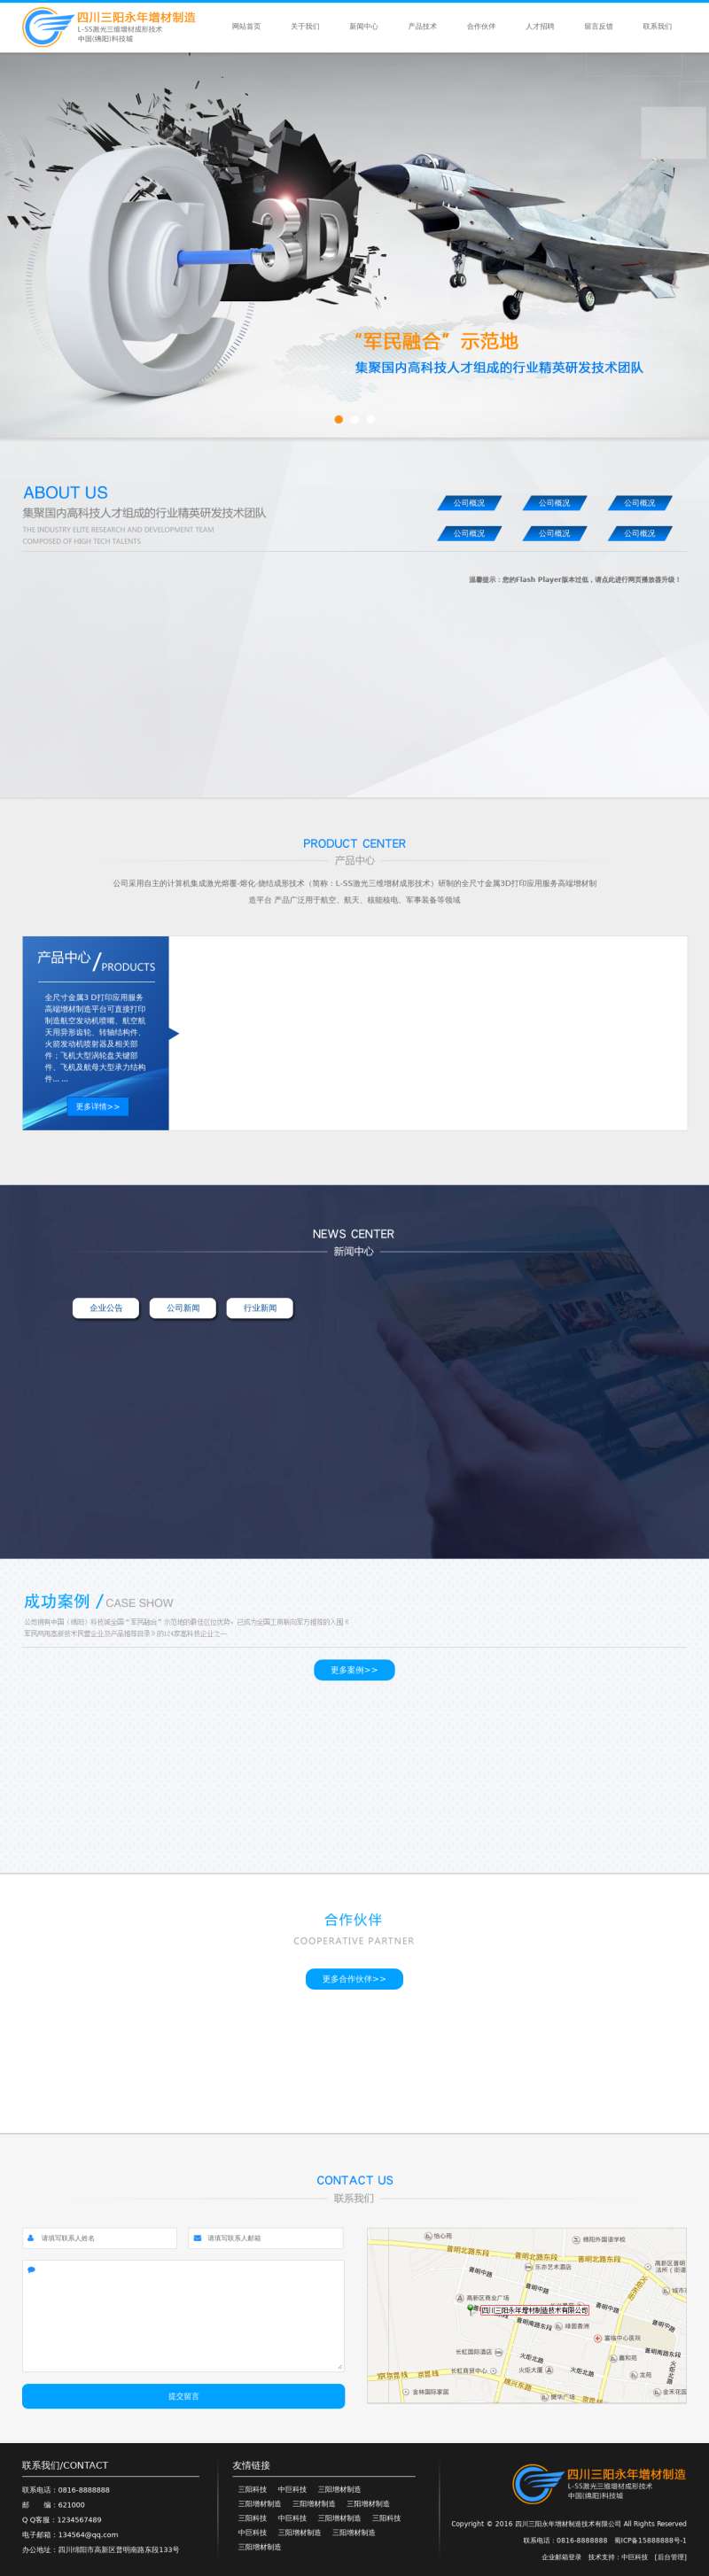 蓝色简洁大气3d打印公司网页模板html下载